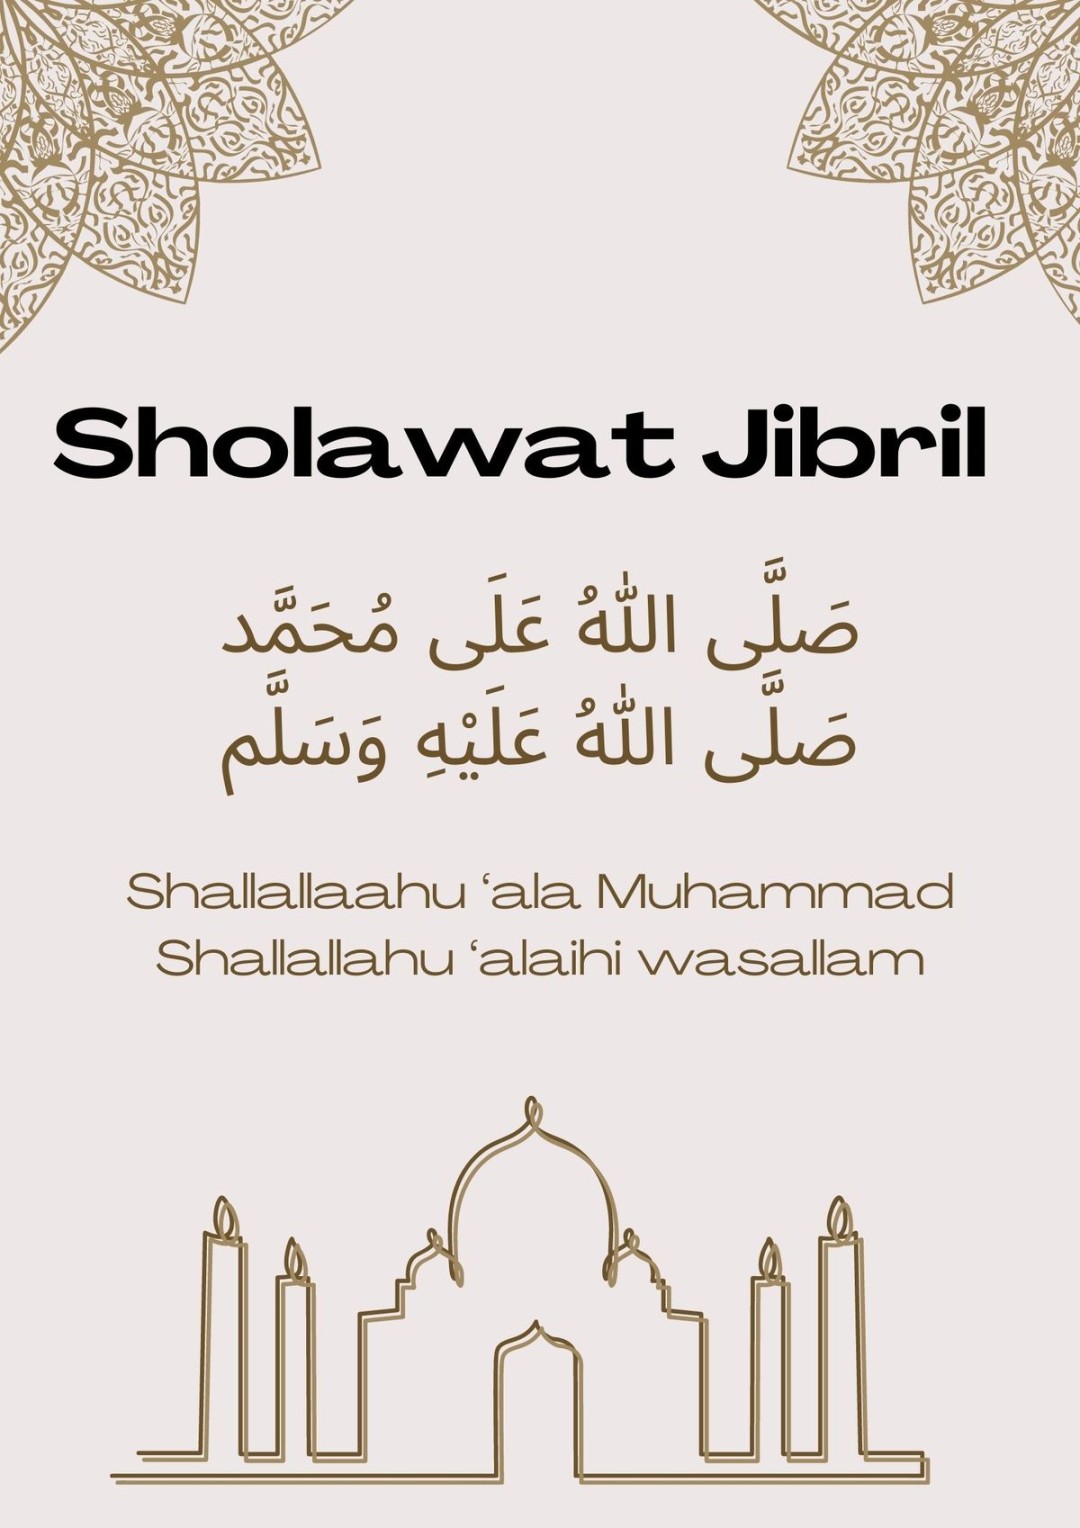 Bacaan Sholawat Jibril Pendek dan Panjang Beserta Keutamaannya